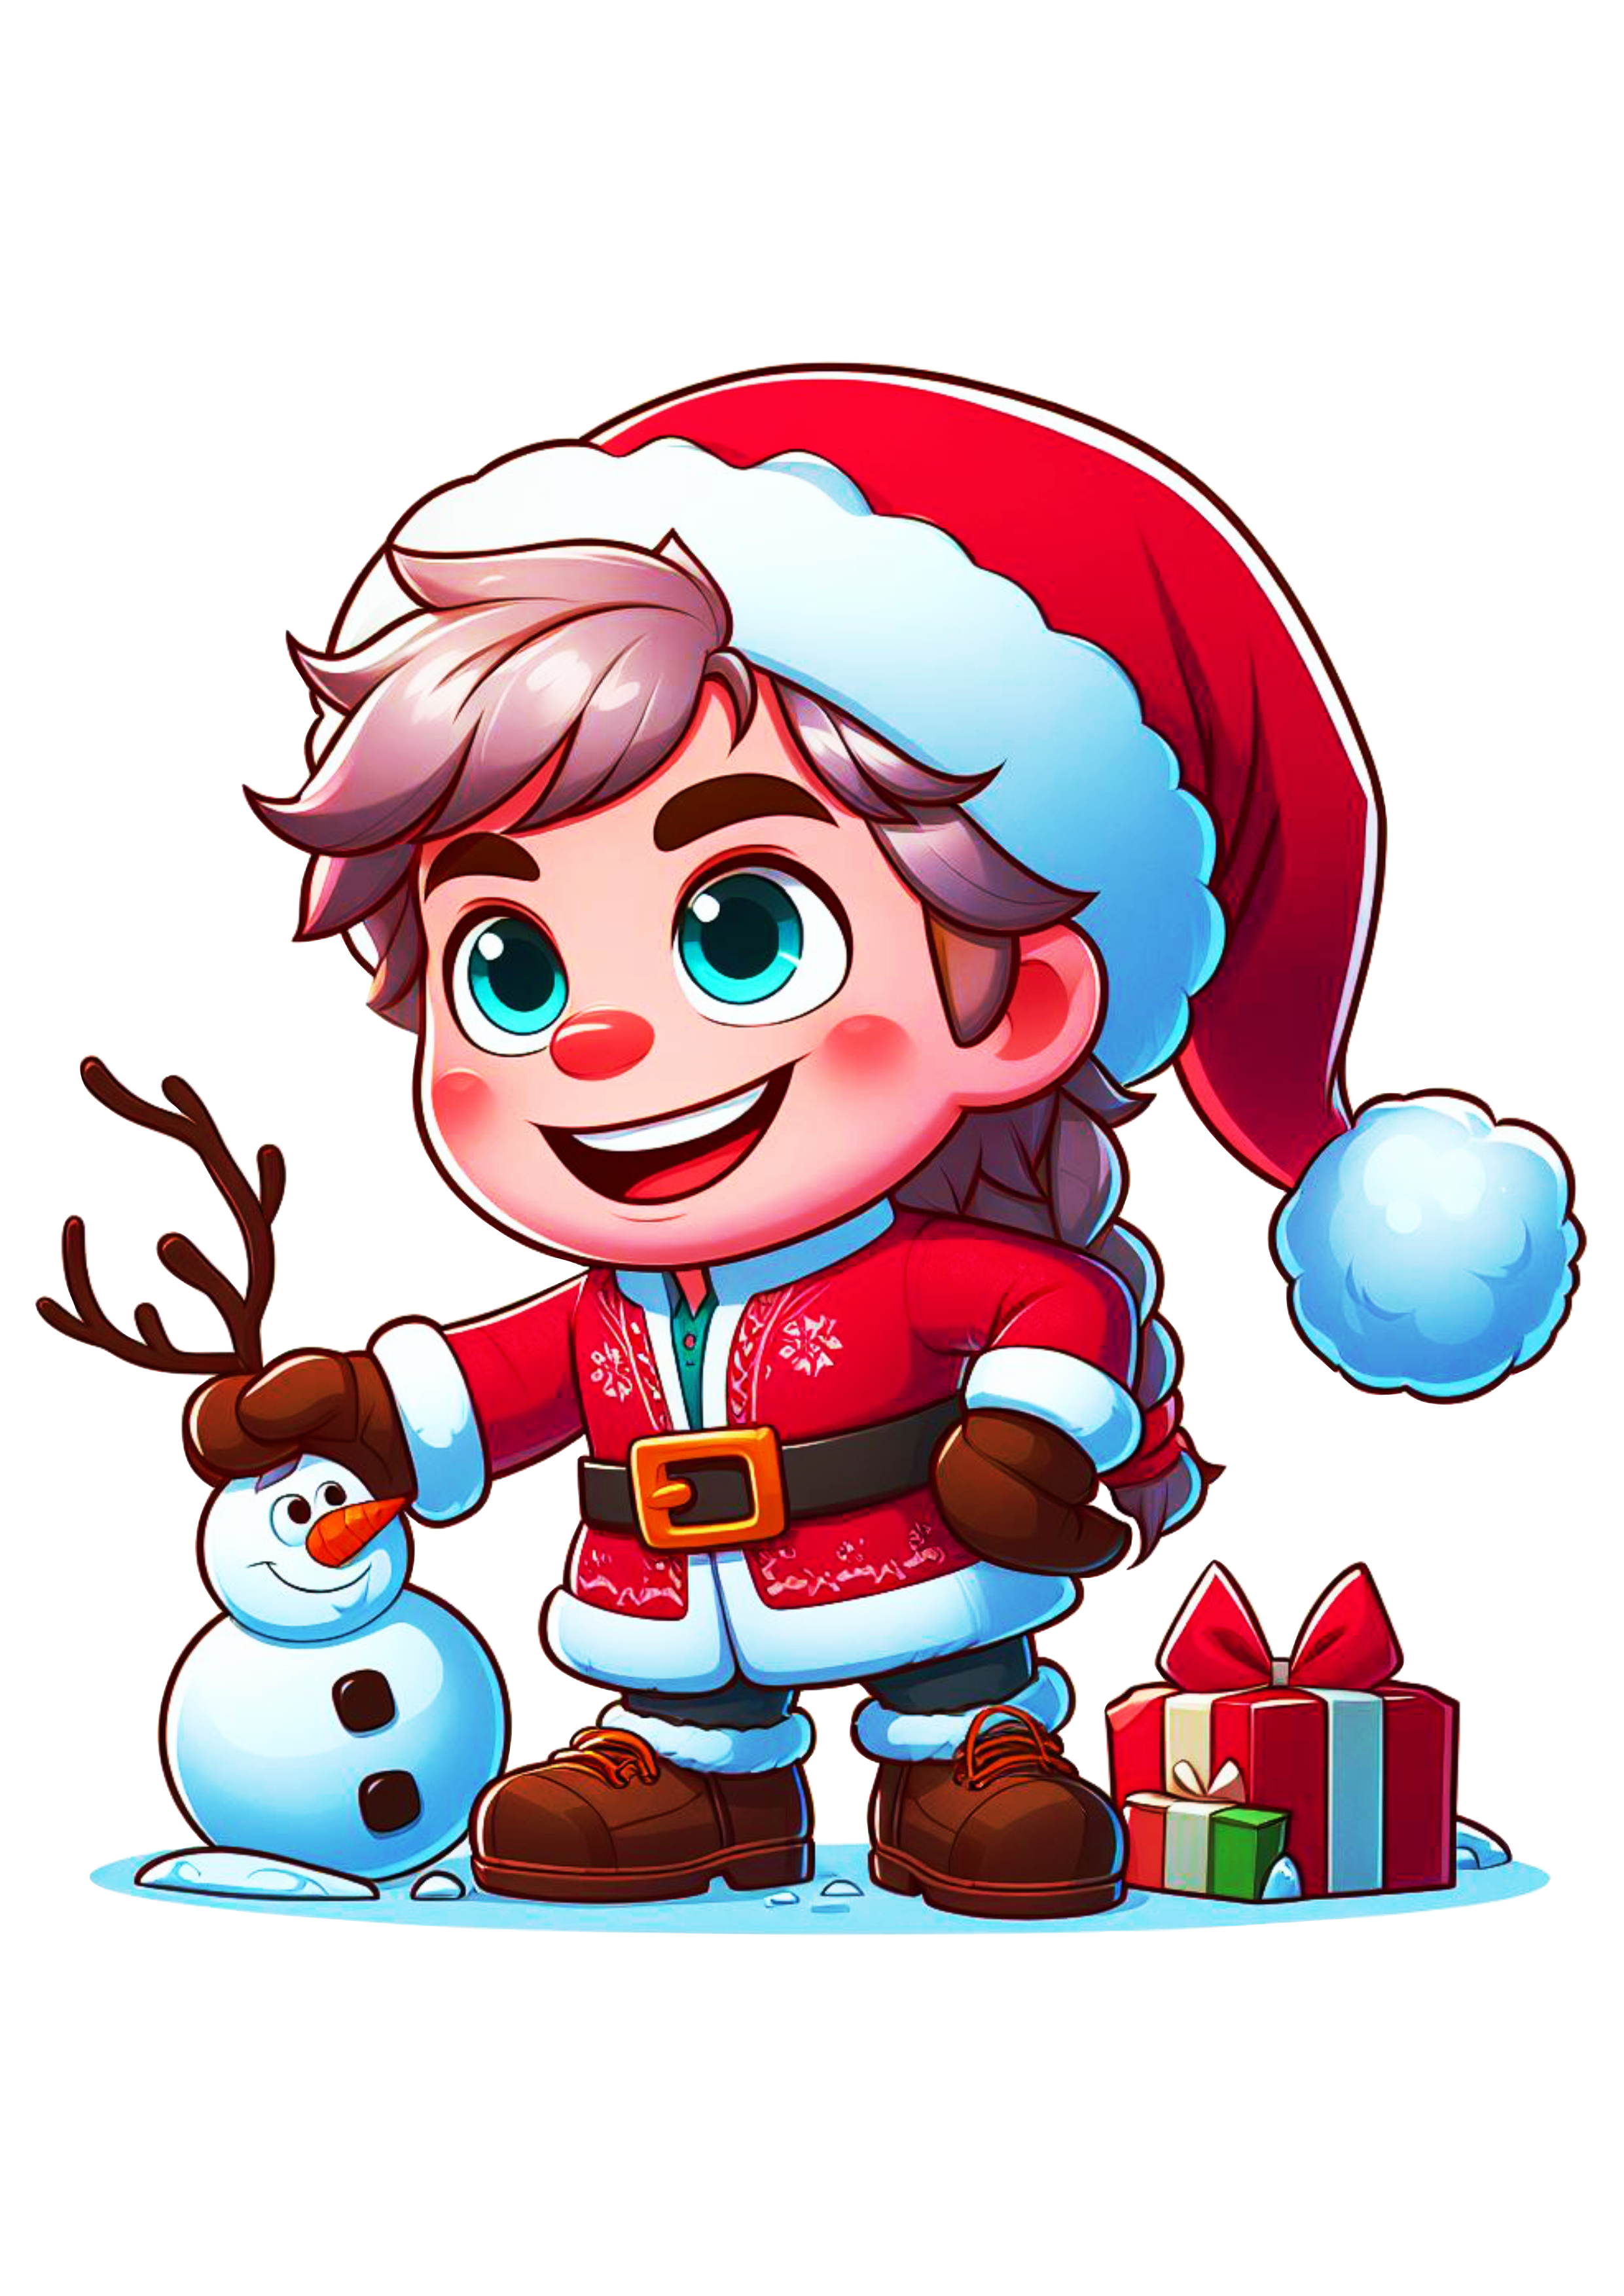 Frozen especial de natal Kristoff com gorro do Papai Noel boneco de neve desenho infantil filme disney plus ilustração fundo transparente png